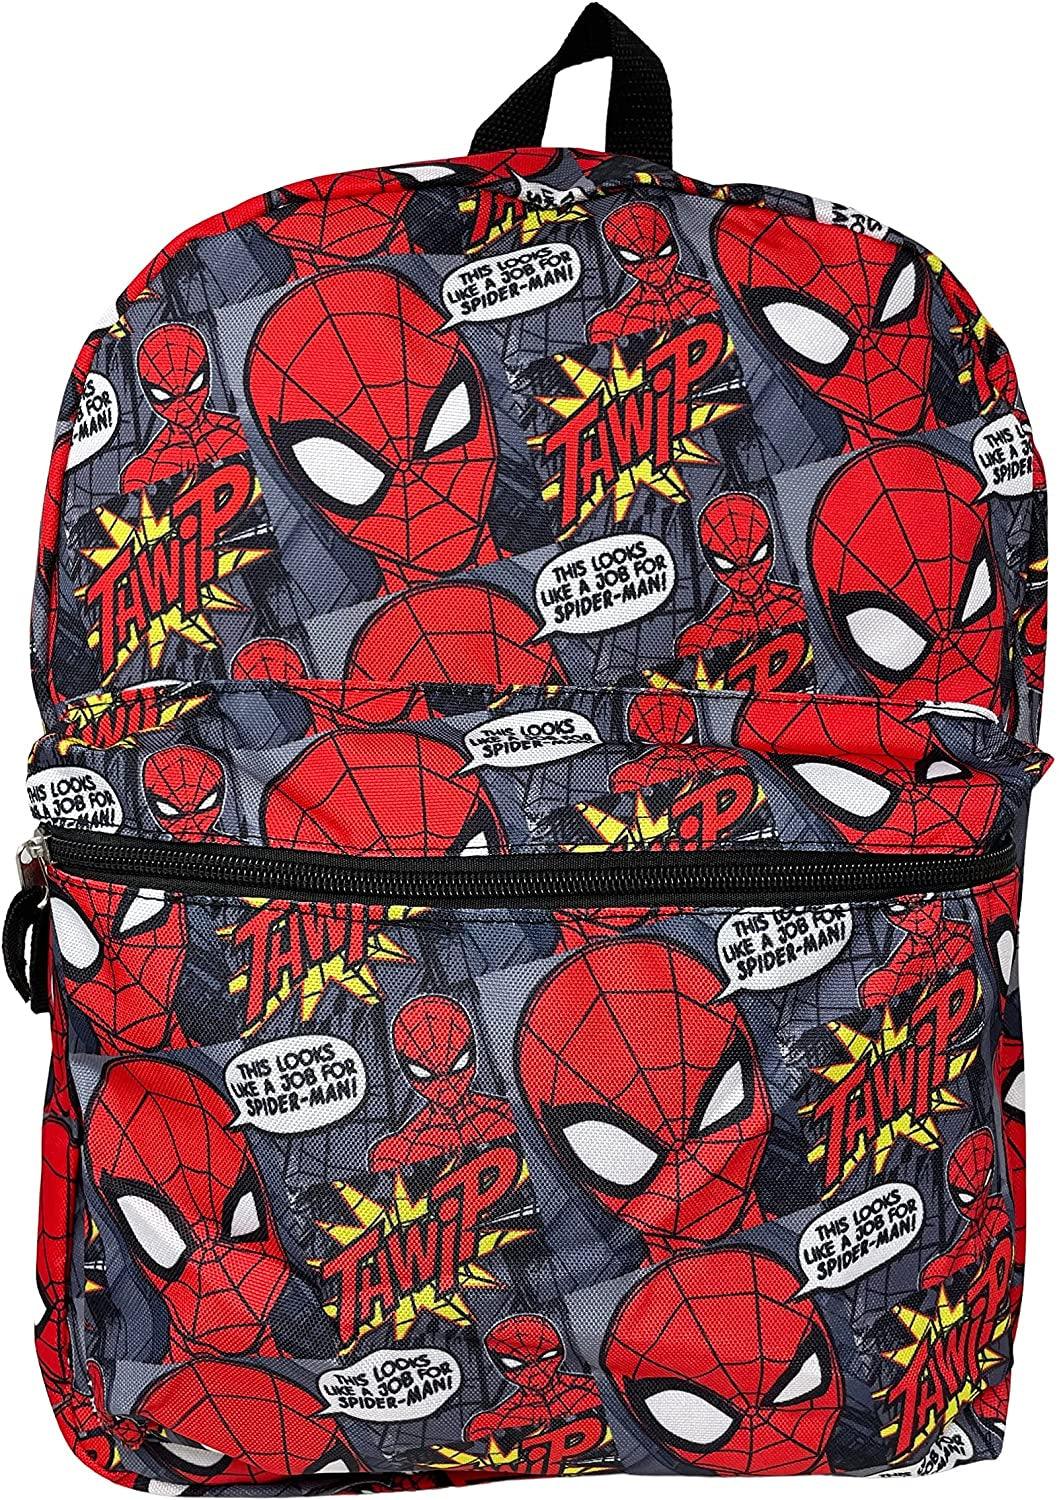 Marvel Comics Spiderman Spider-Man 16 Large Roller Backpack Trolley.